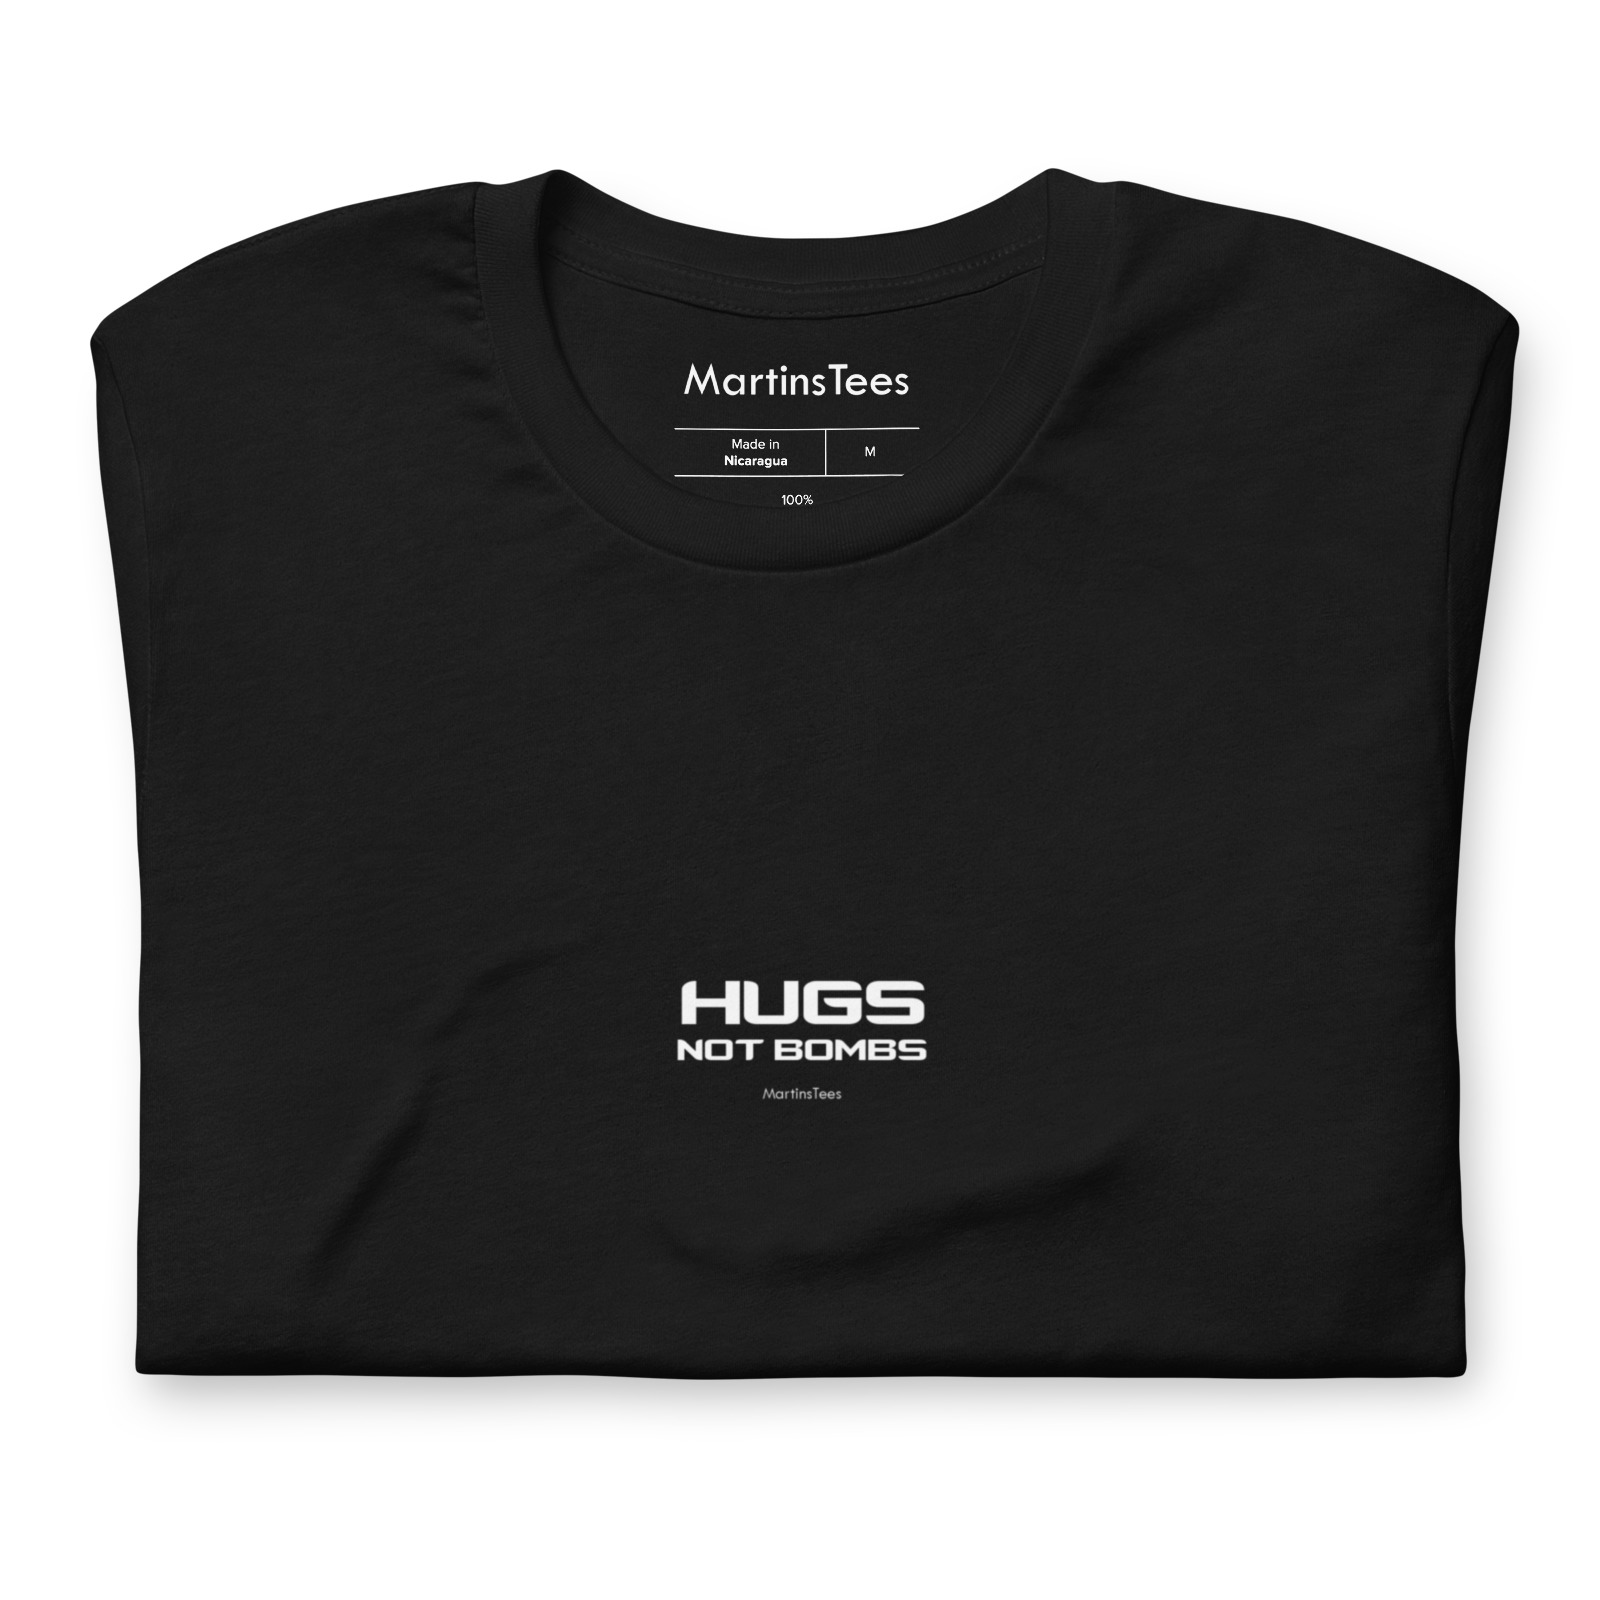 T-shirt: HUGS - NOT BOMBS